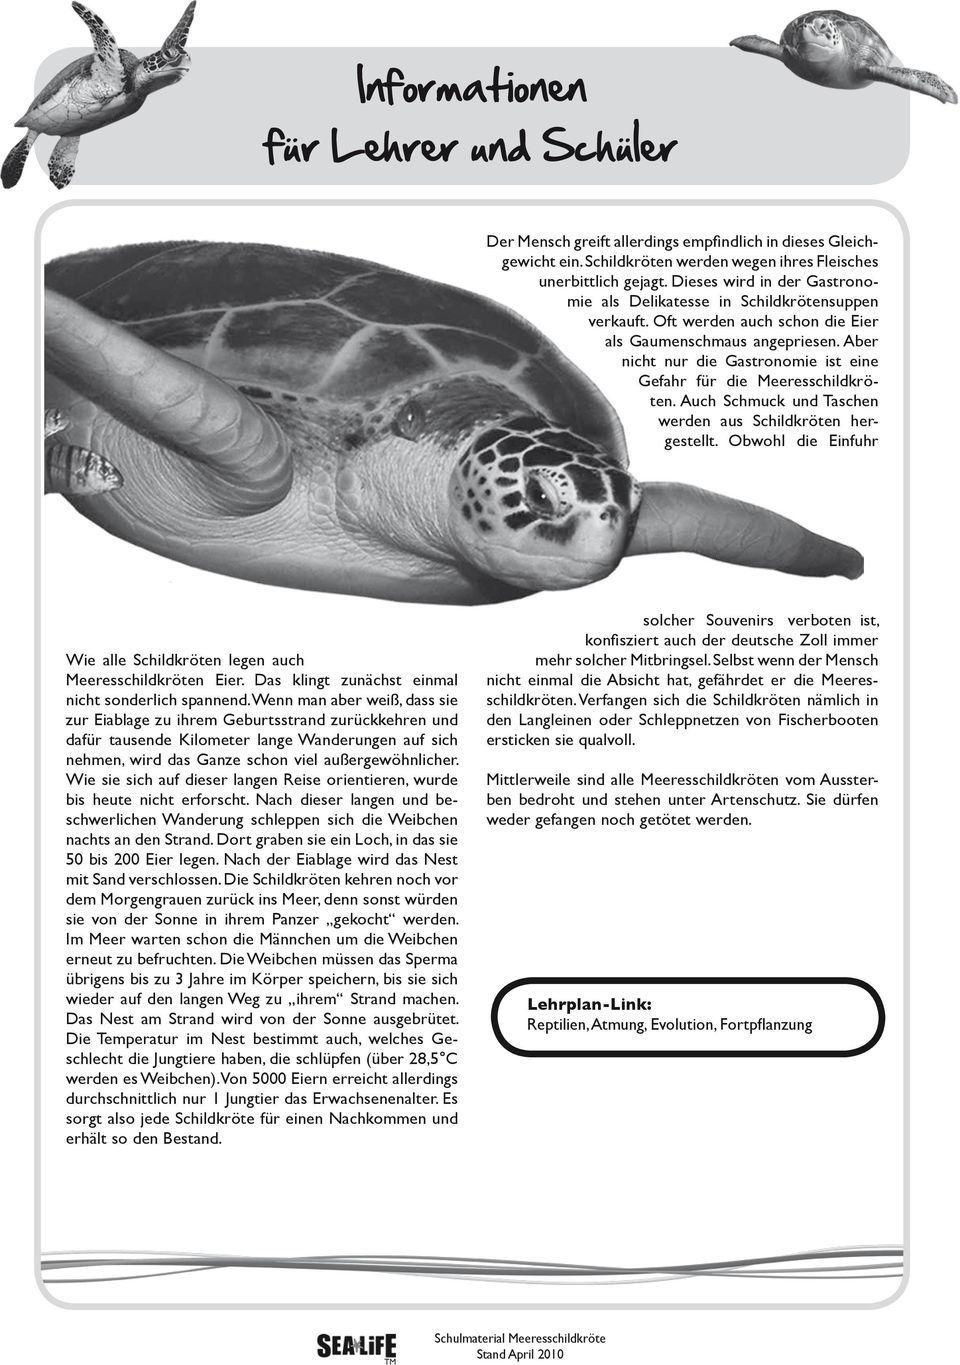 Aber nicht nur die Gastronomie ist eine Gefahr für die Meeresschildkröten. Auch Schmuck und Taschen werden aus Schildkröten hergestellt.